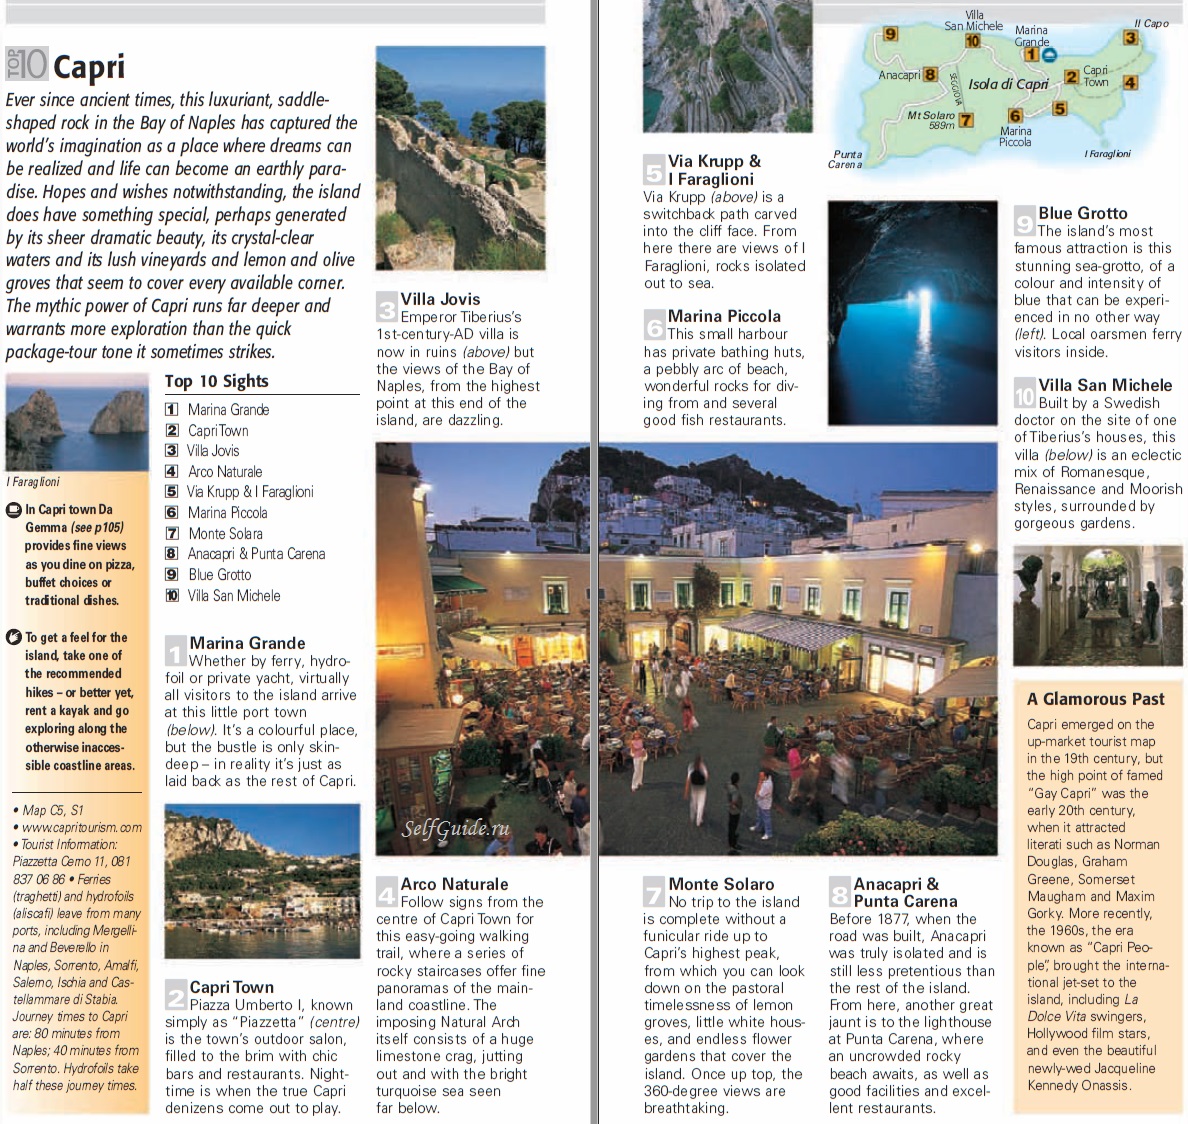 Остров Капри, Италия, Неаполь - достопримечательности, путеводитель по острову Капри